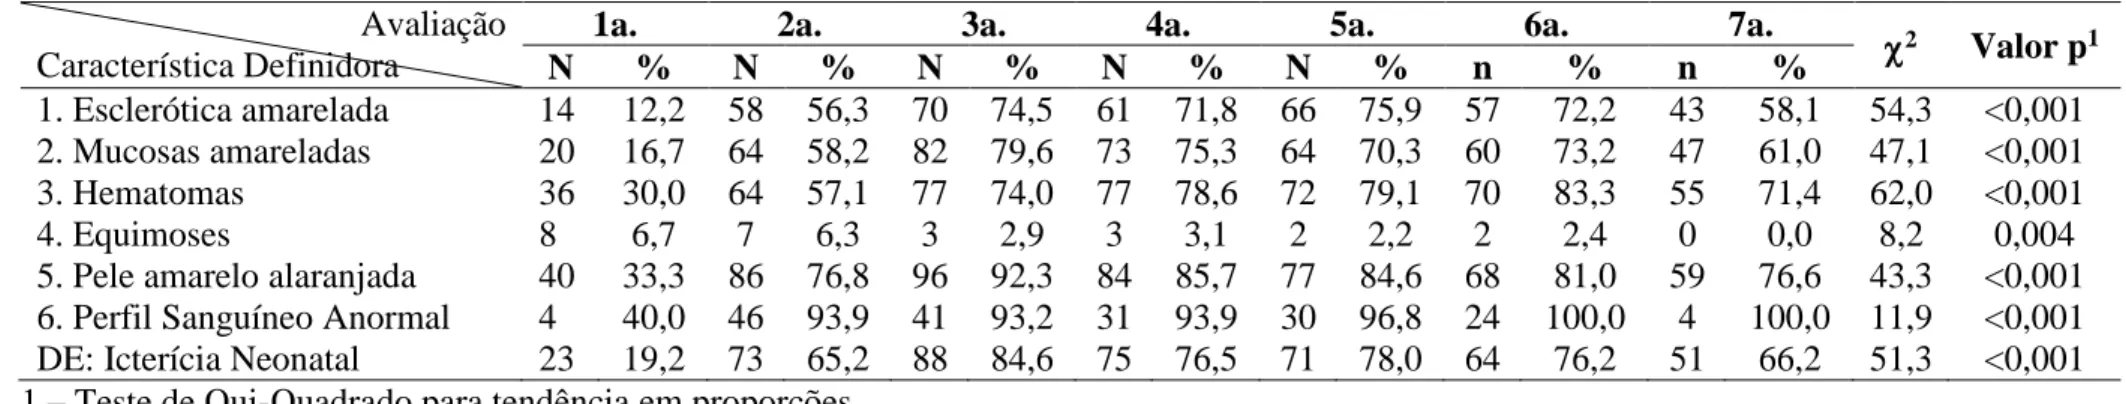 Tabela 4: Distribuição das características definidoras e do diagnóstico de enfermagem Icterícia neonatal nos sete dias de seguimento